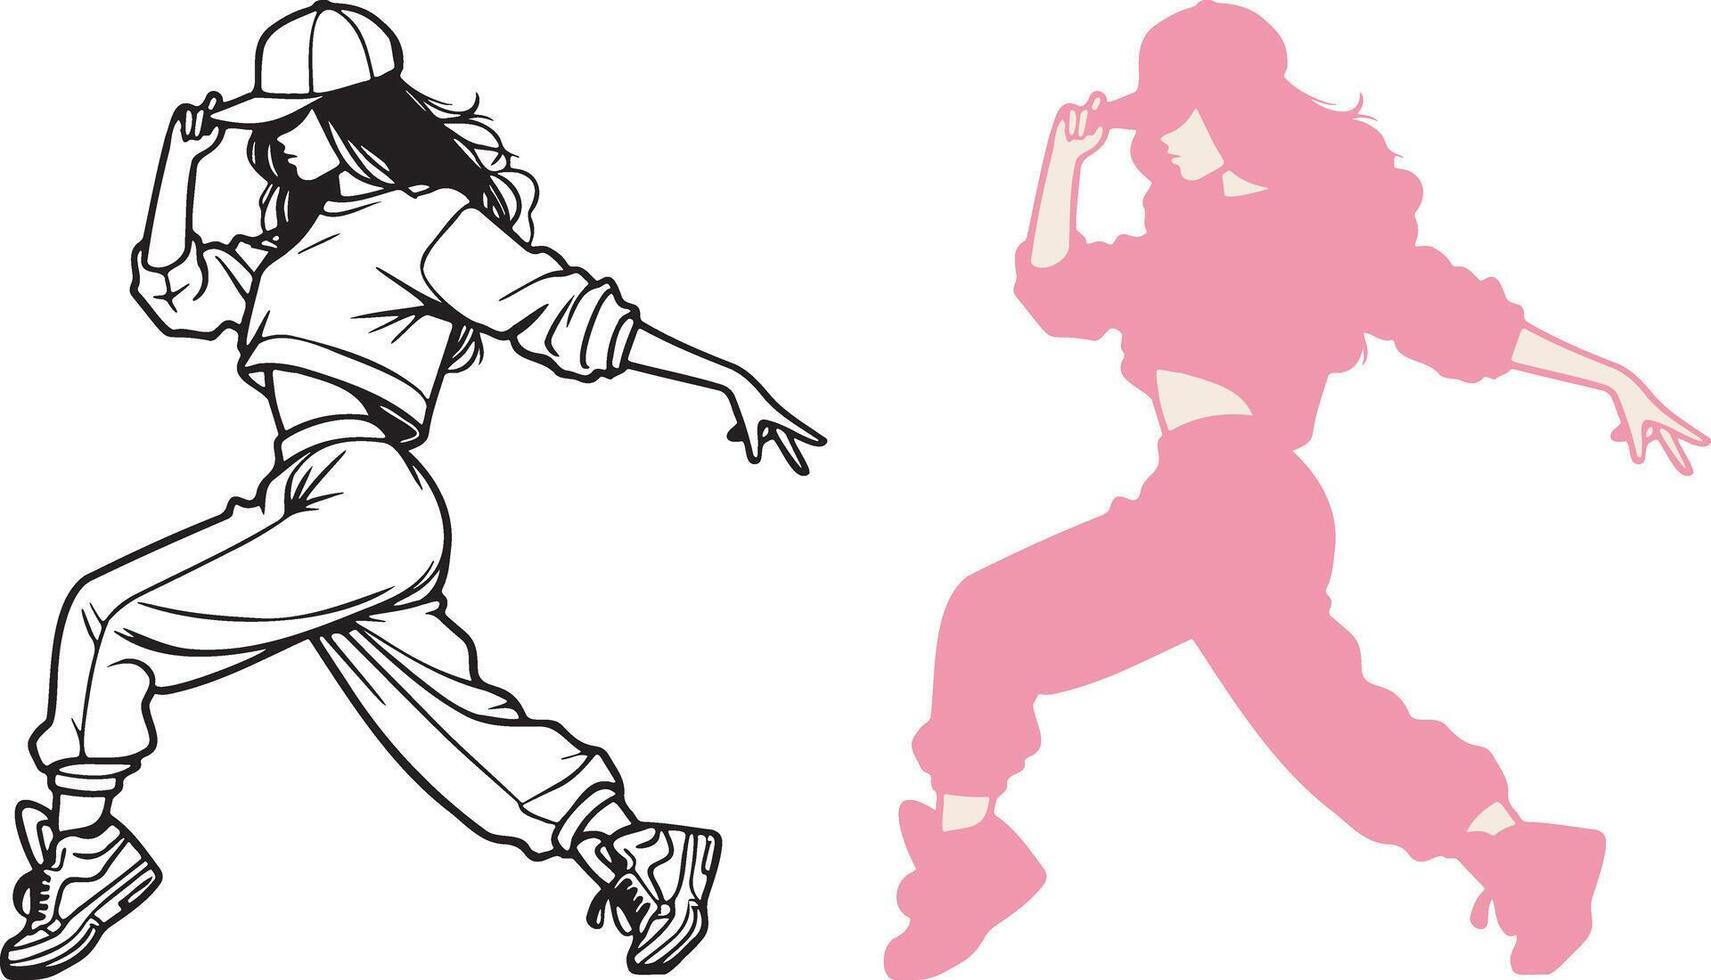 Street Dance Girl Illustration. vector